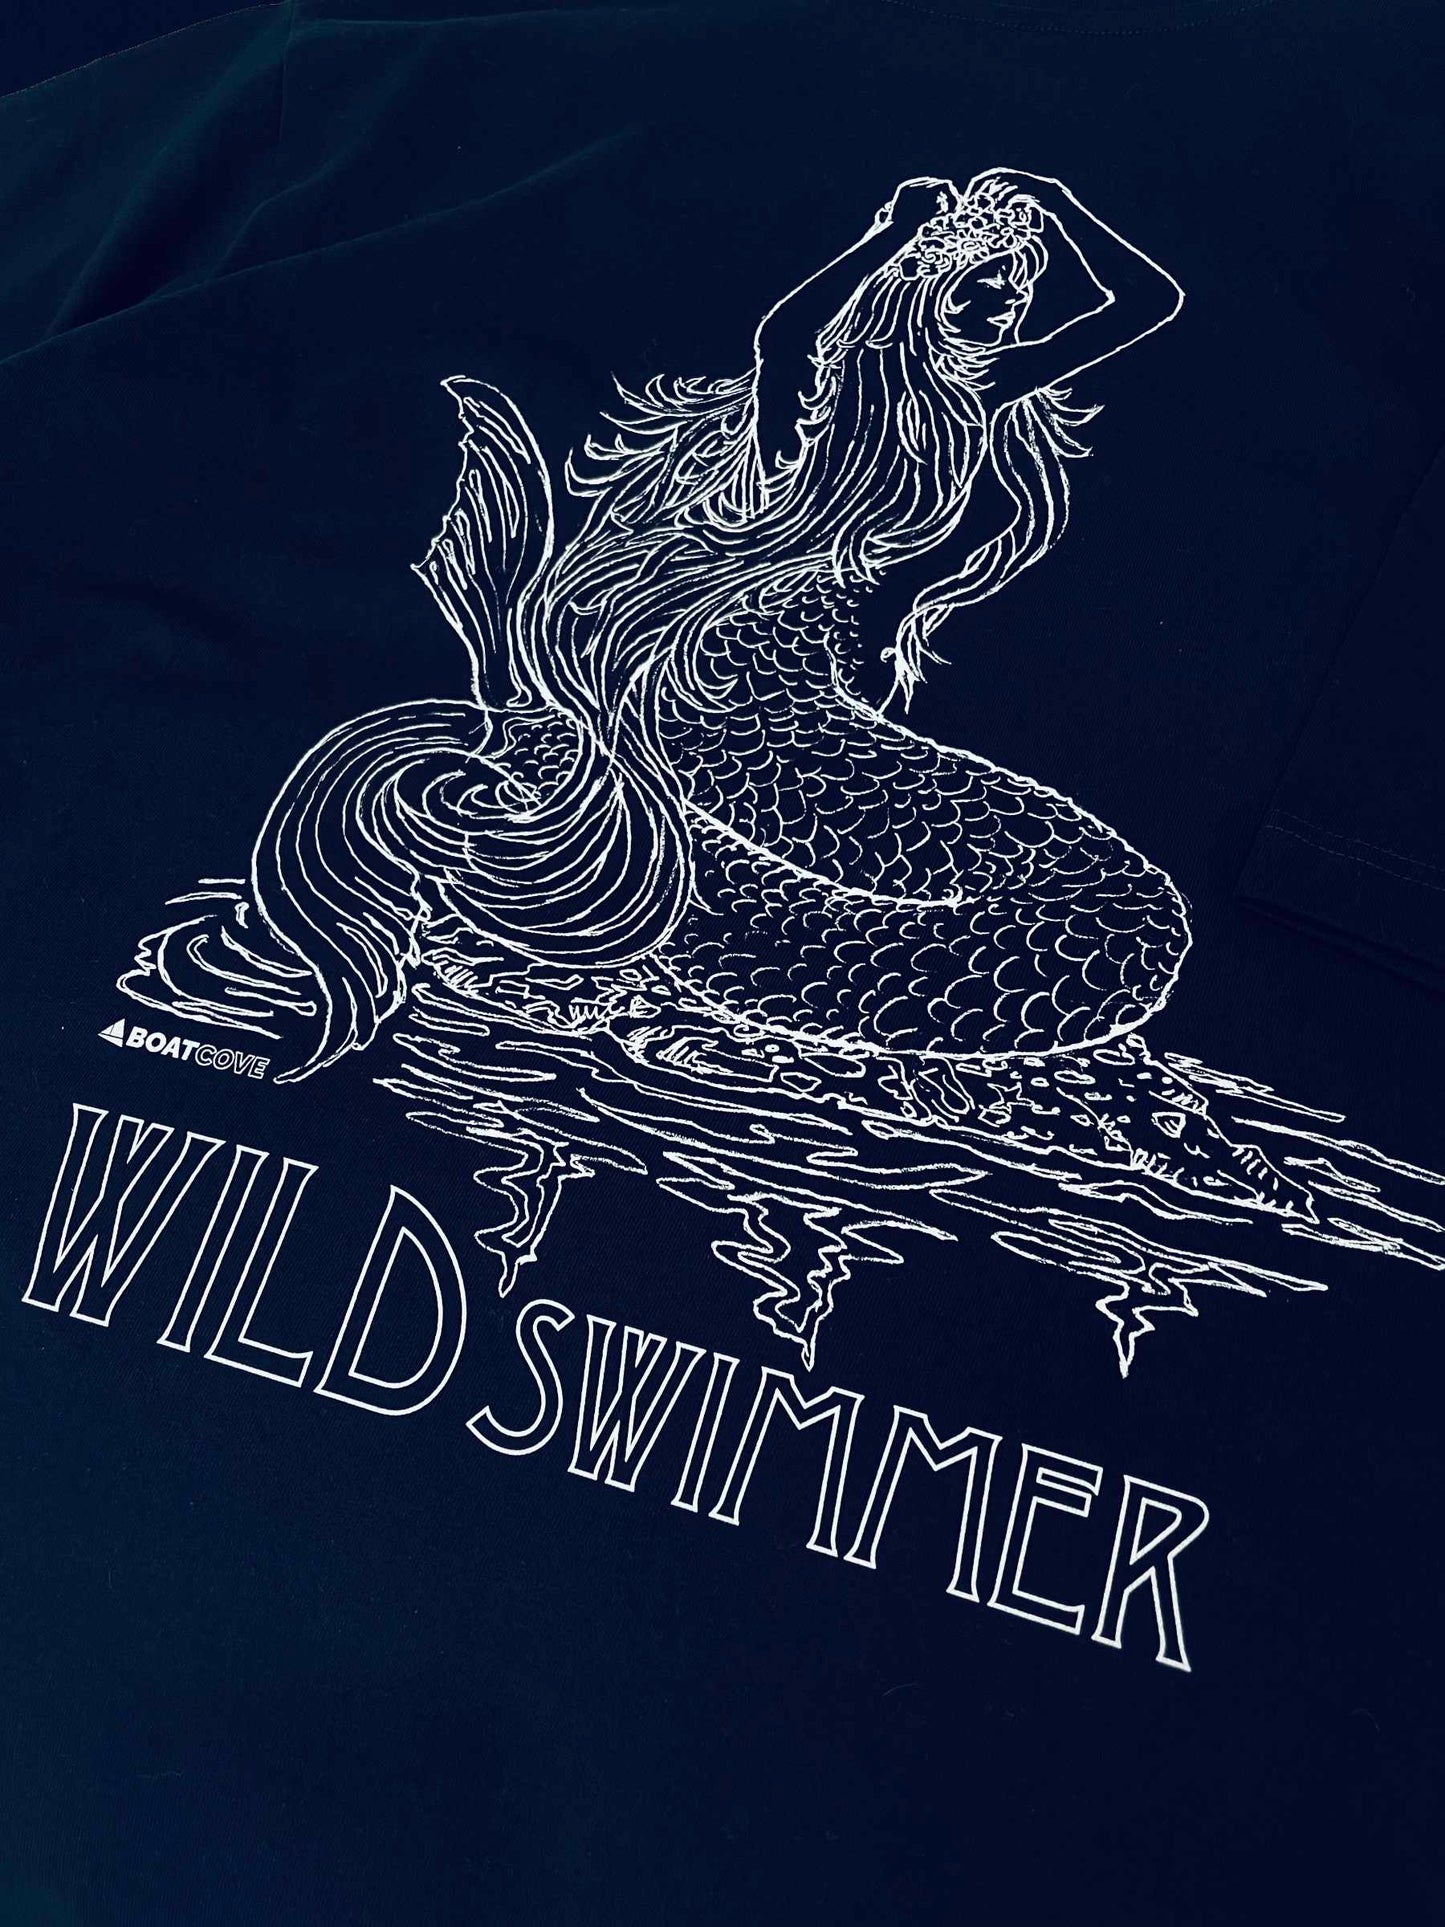 Wild Swimmer Mermaid Tee - Sustainable Navy T Shirt